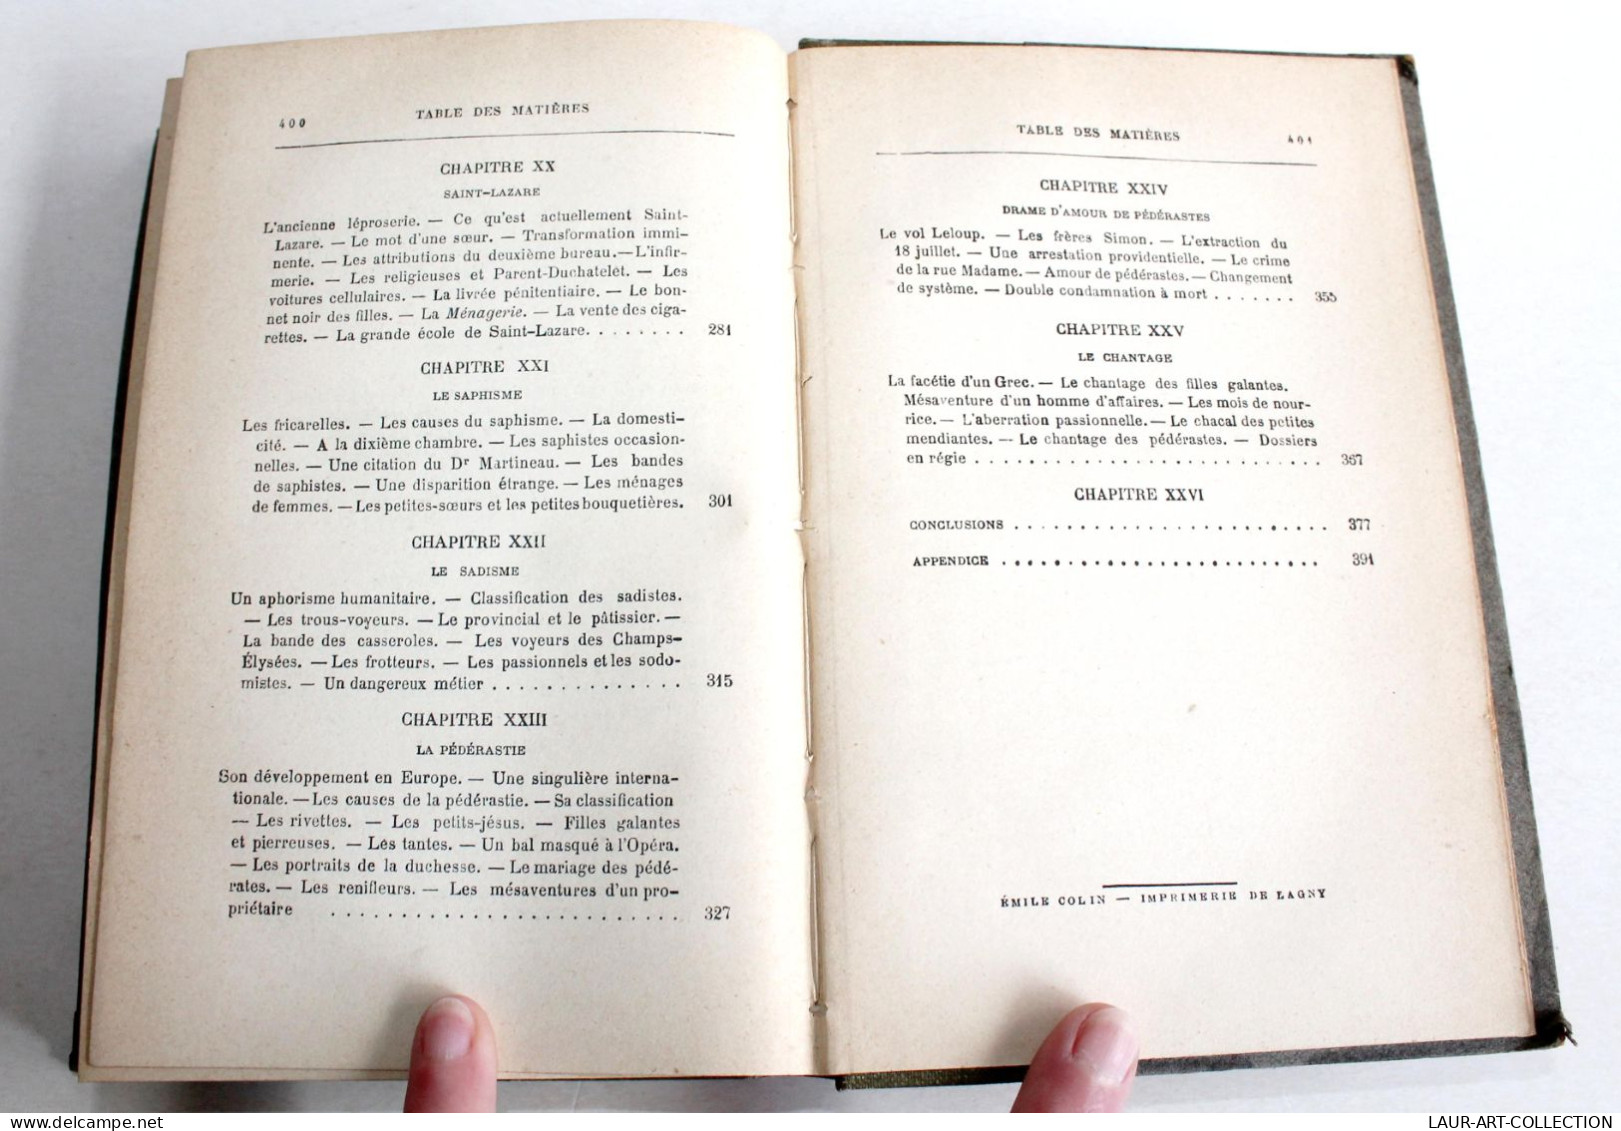 LA CORRUPTION A PARIS (PROSTITUTION) par COFFIGNON, PARIS VIVANT DEMI MONDE 1889 / ANCIEN LIVRE XIXe SIECLE (2603.119)